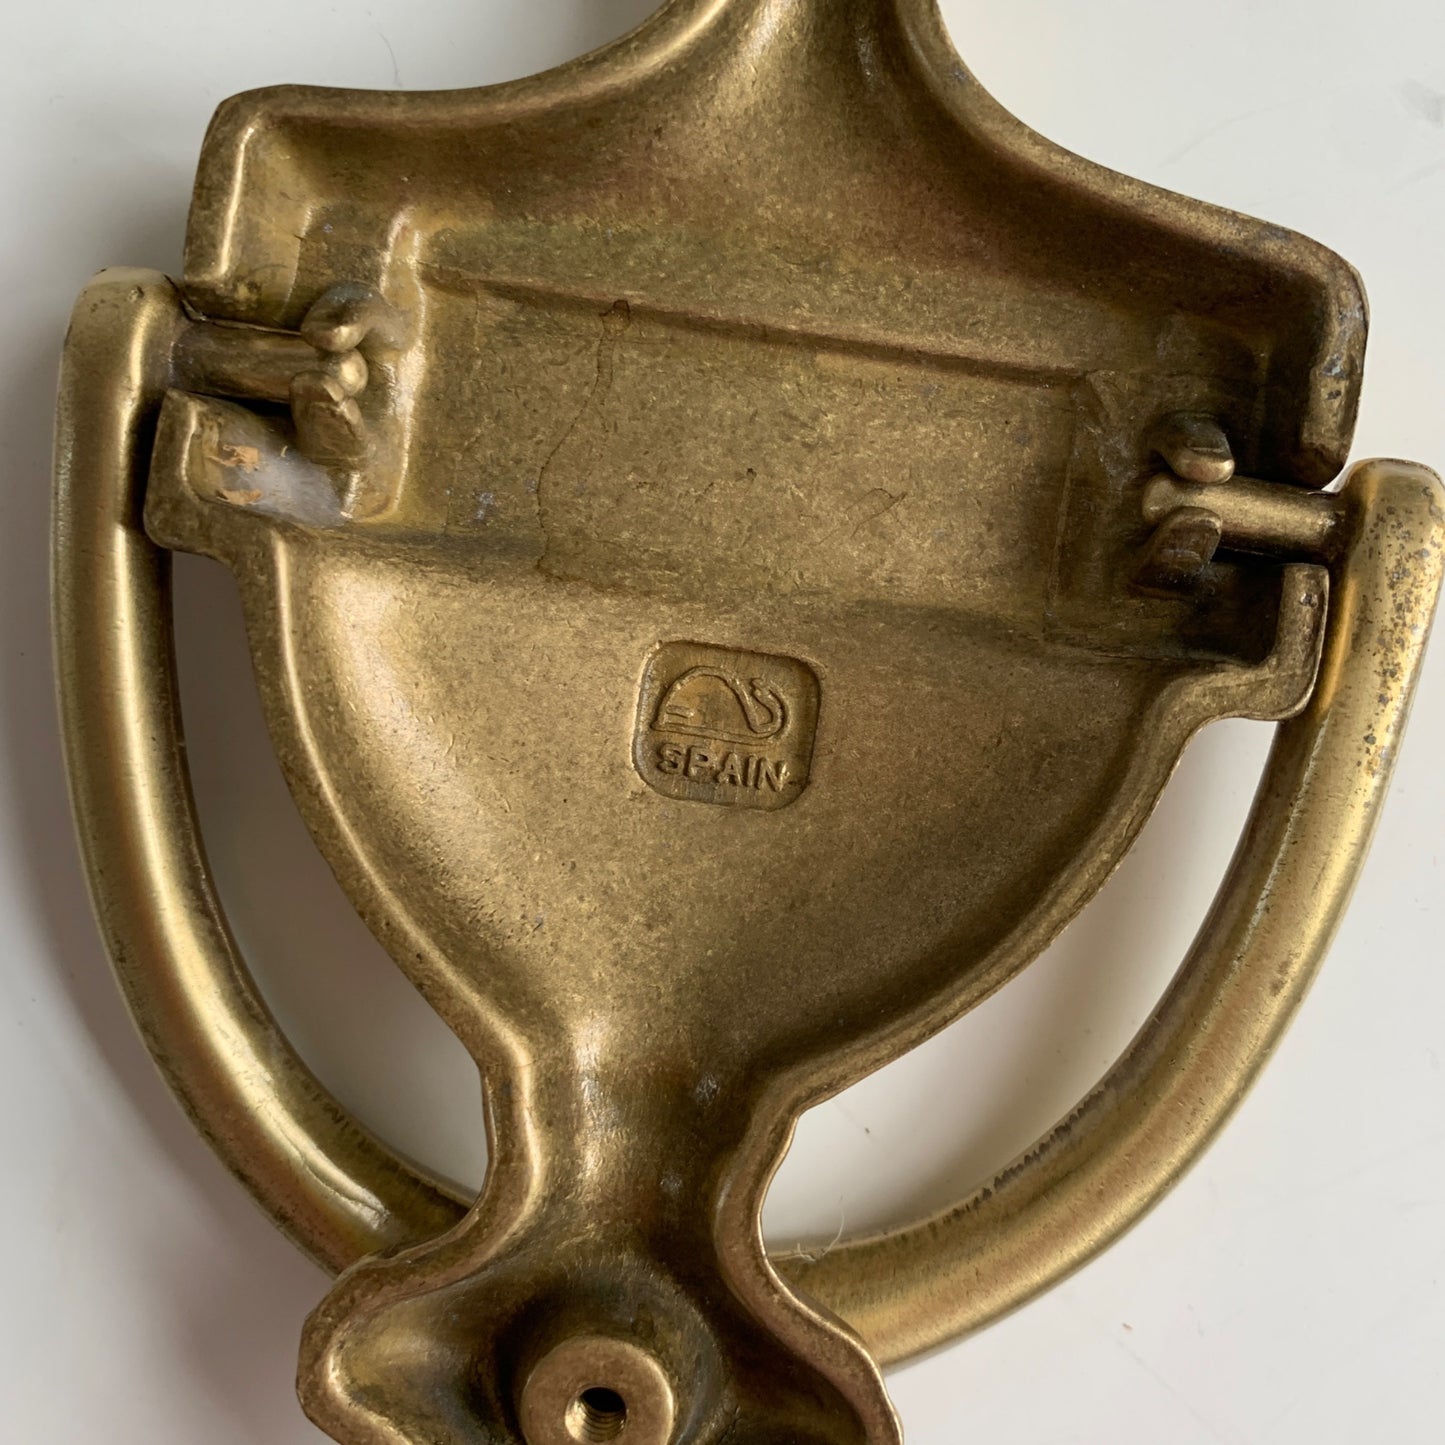 Vintage Brass Door Knocker Made in Spain